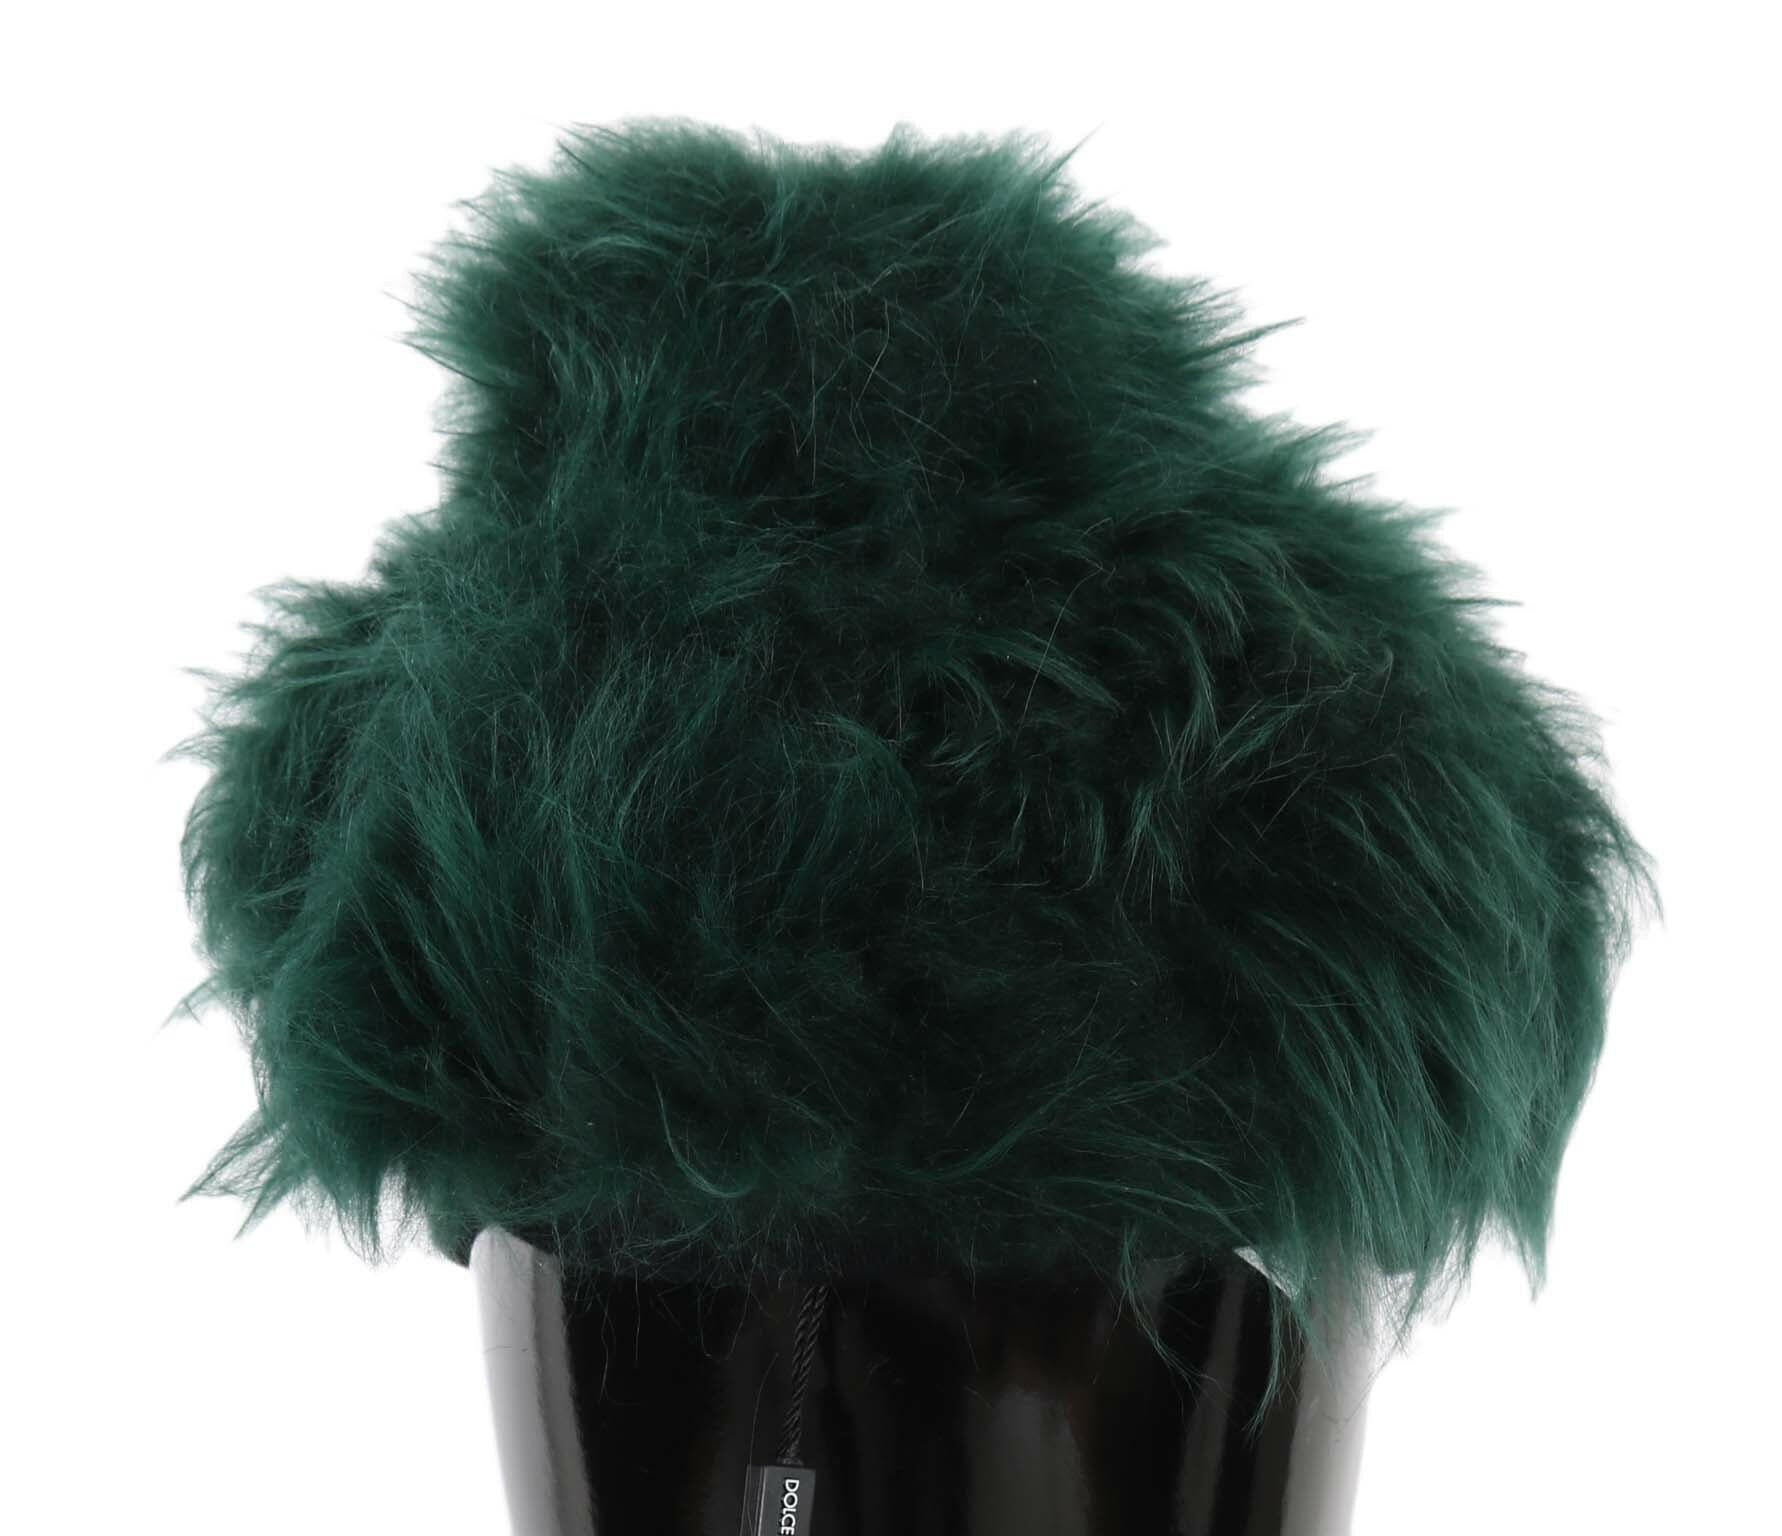 Dolce & Gabbana Green Fur DG Logo Embroidered Cloche Hat - GENUINE AUTHENTIC BRAND LLC  